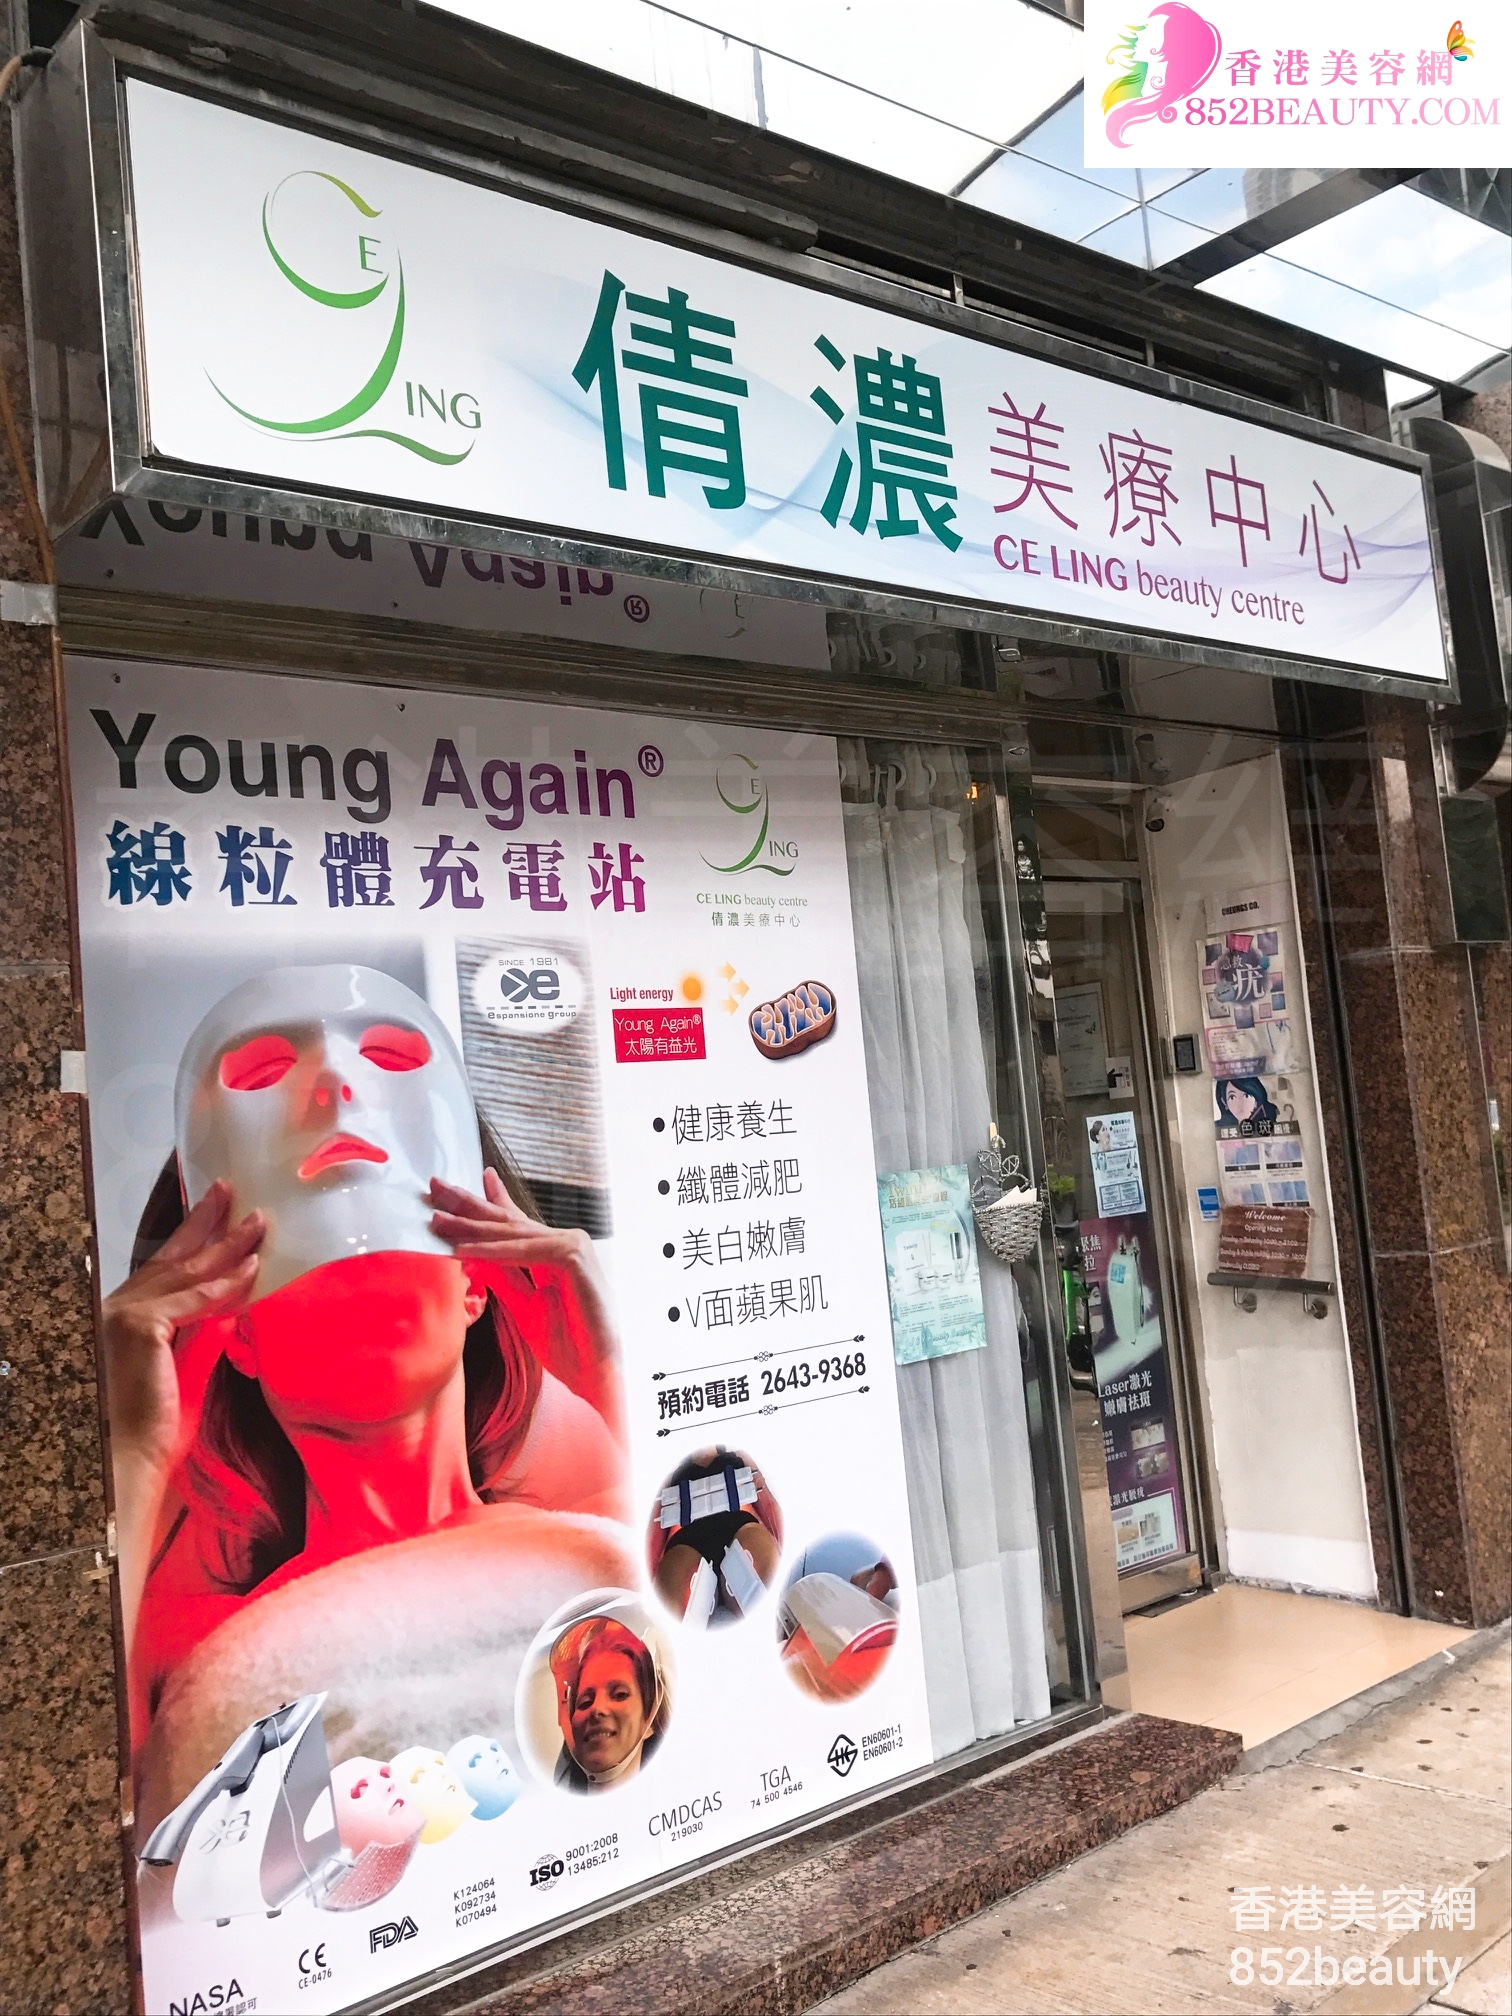 香港美容網 Hong Kong Beauty Salon 美容院 / 美容師: 倩濃美療中心 CE LING Beauty Centre